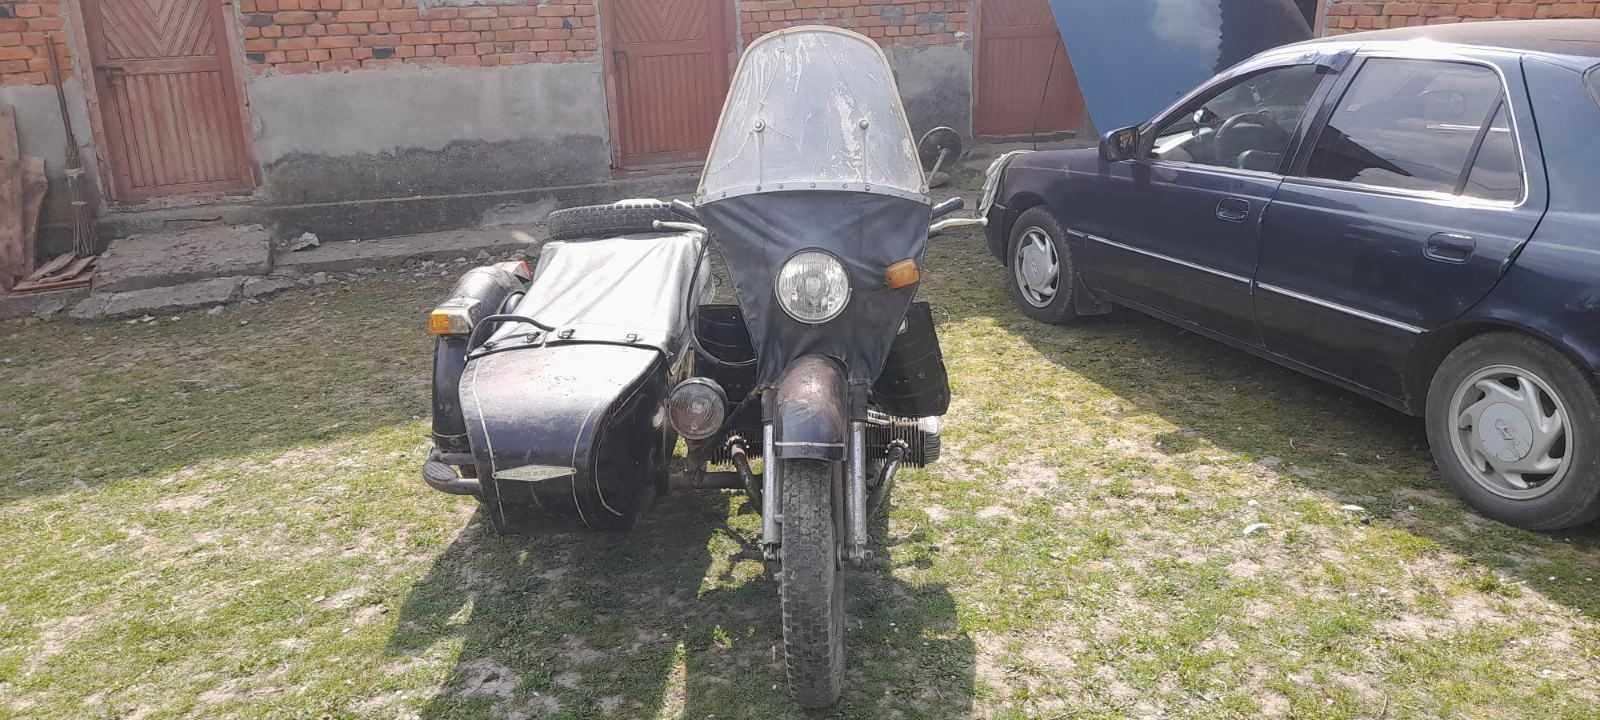 Продається мотоцикл Дніпро МТ-10 з коляскою.